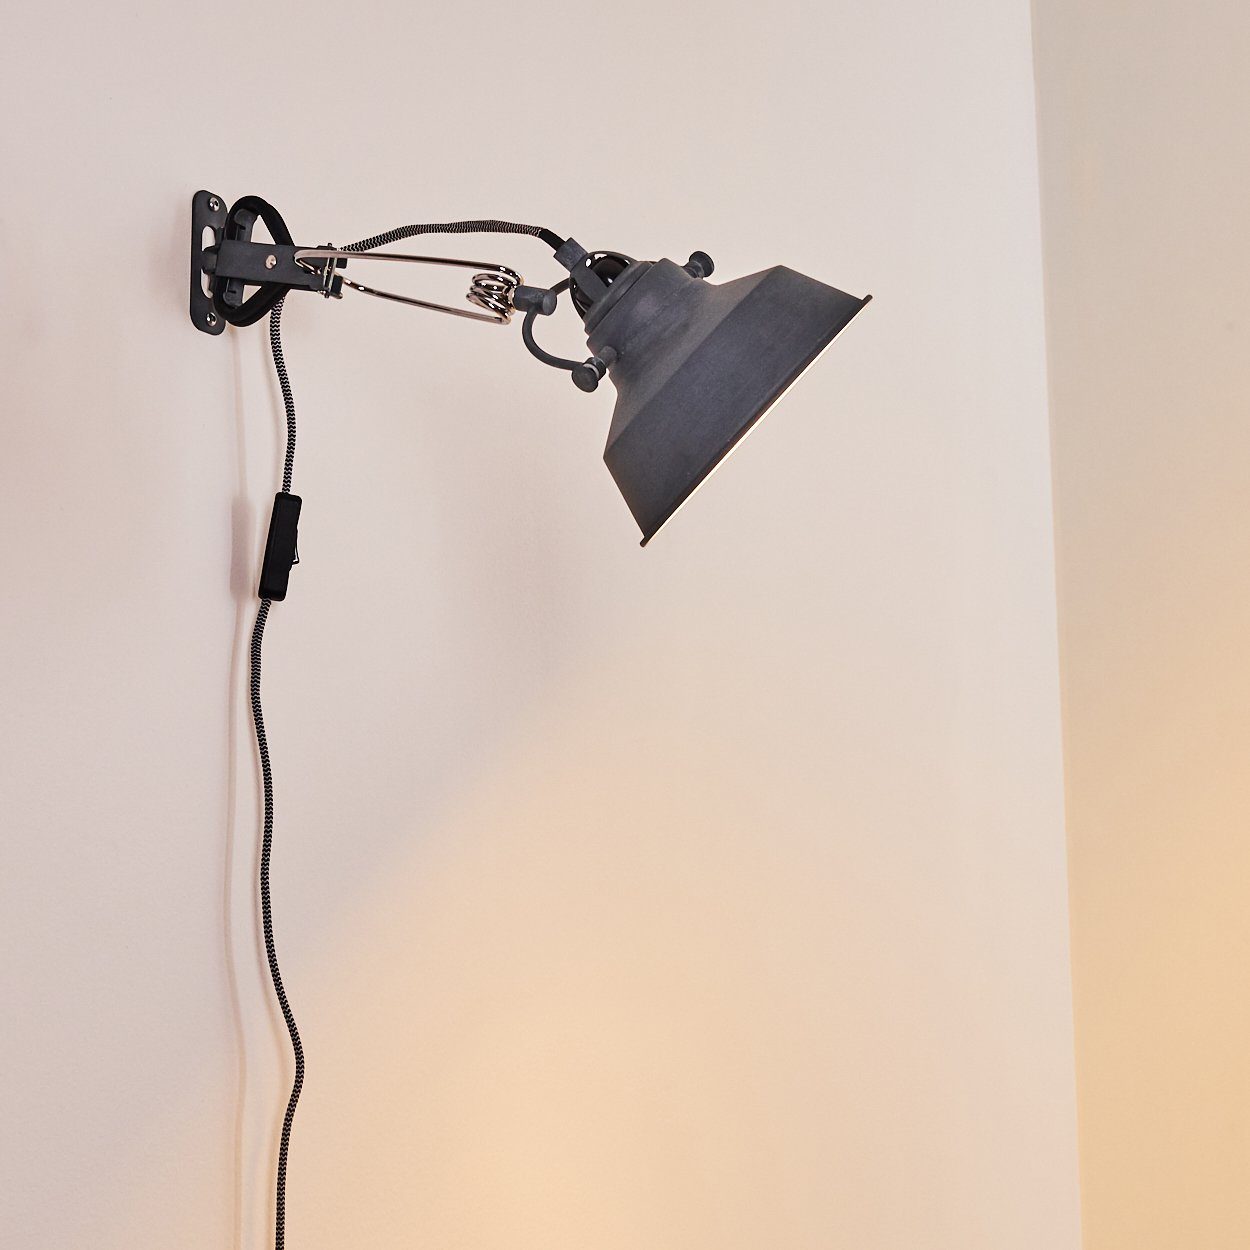 Leuchte hofstein Vintage Wand Schalter Schlaf Lampe Wohn Zimmer grau Wandleuchte Flur